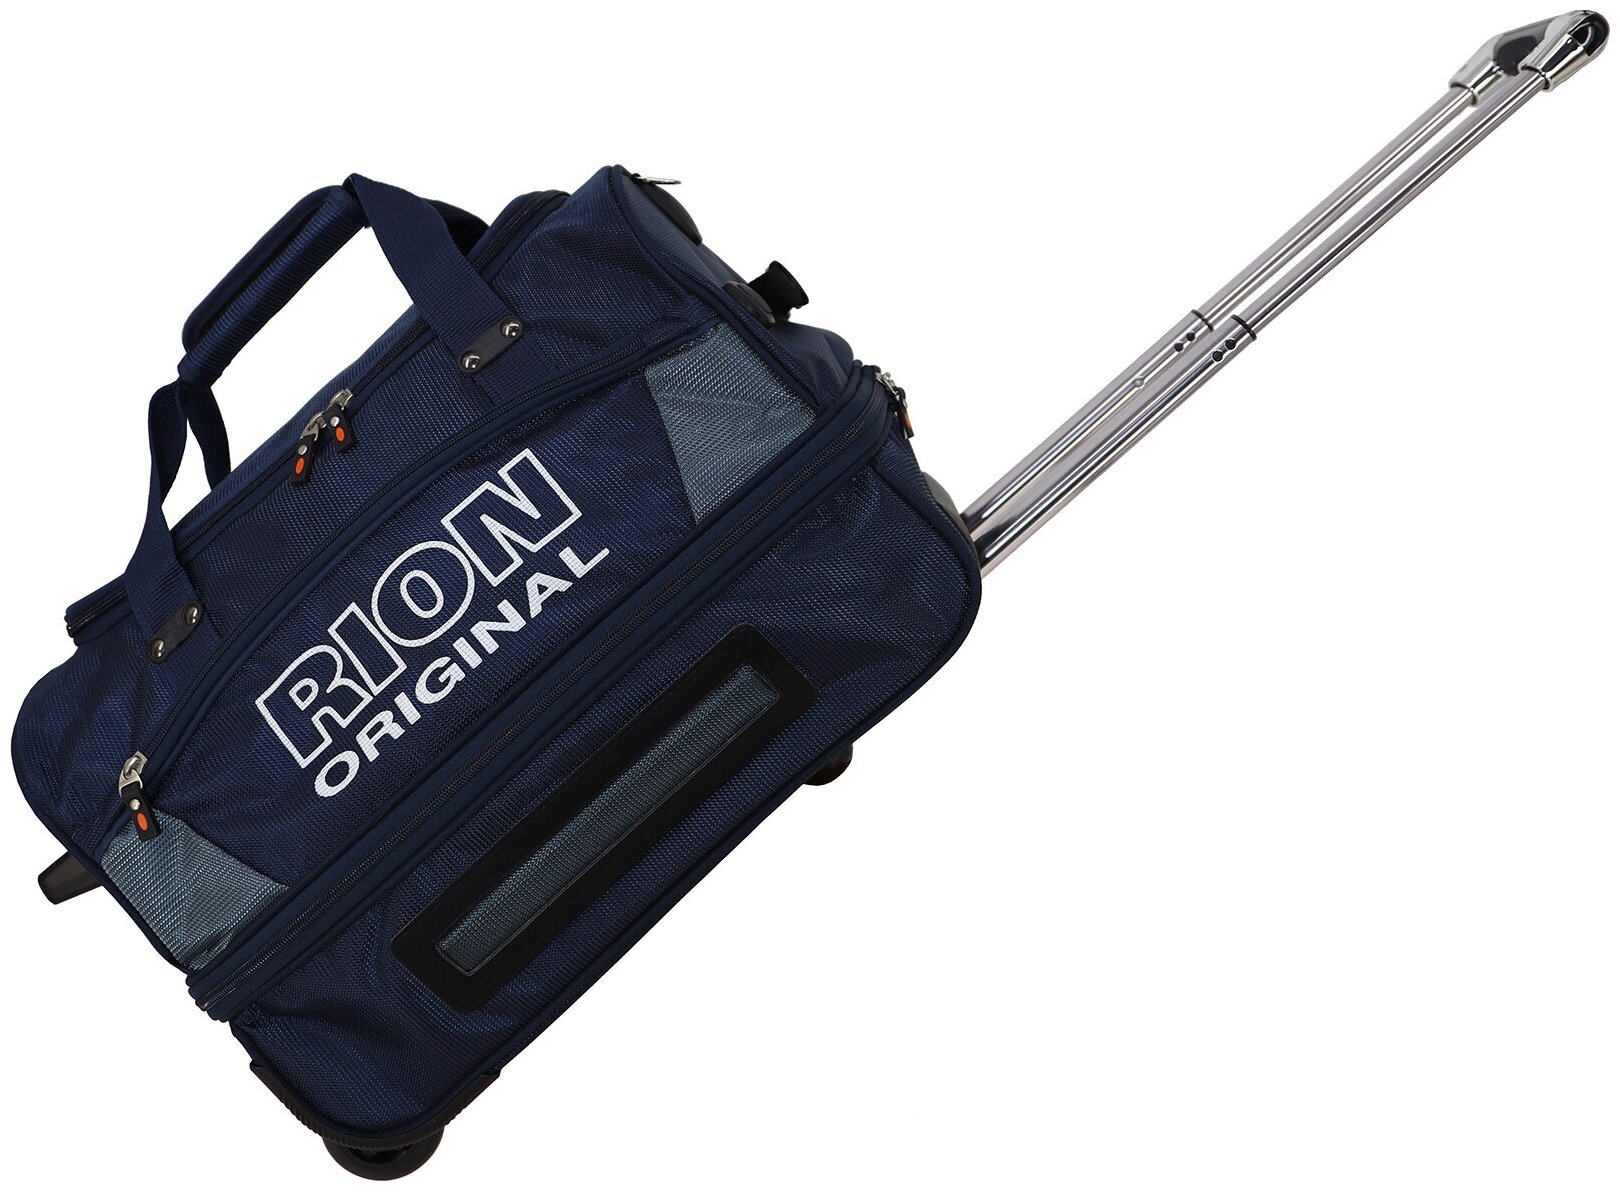 Дорожная сумка на колесах Рион+ (RION+) для путешествий и спорта R143, 40 литров, укрепленная (до 25кг), водоотталкивающая ткань, синий